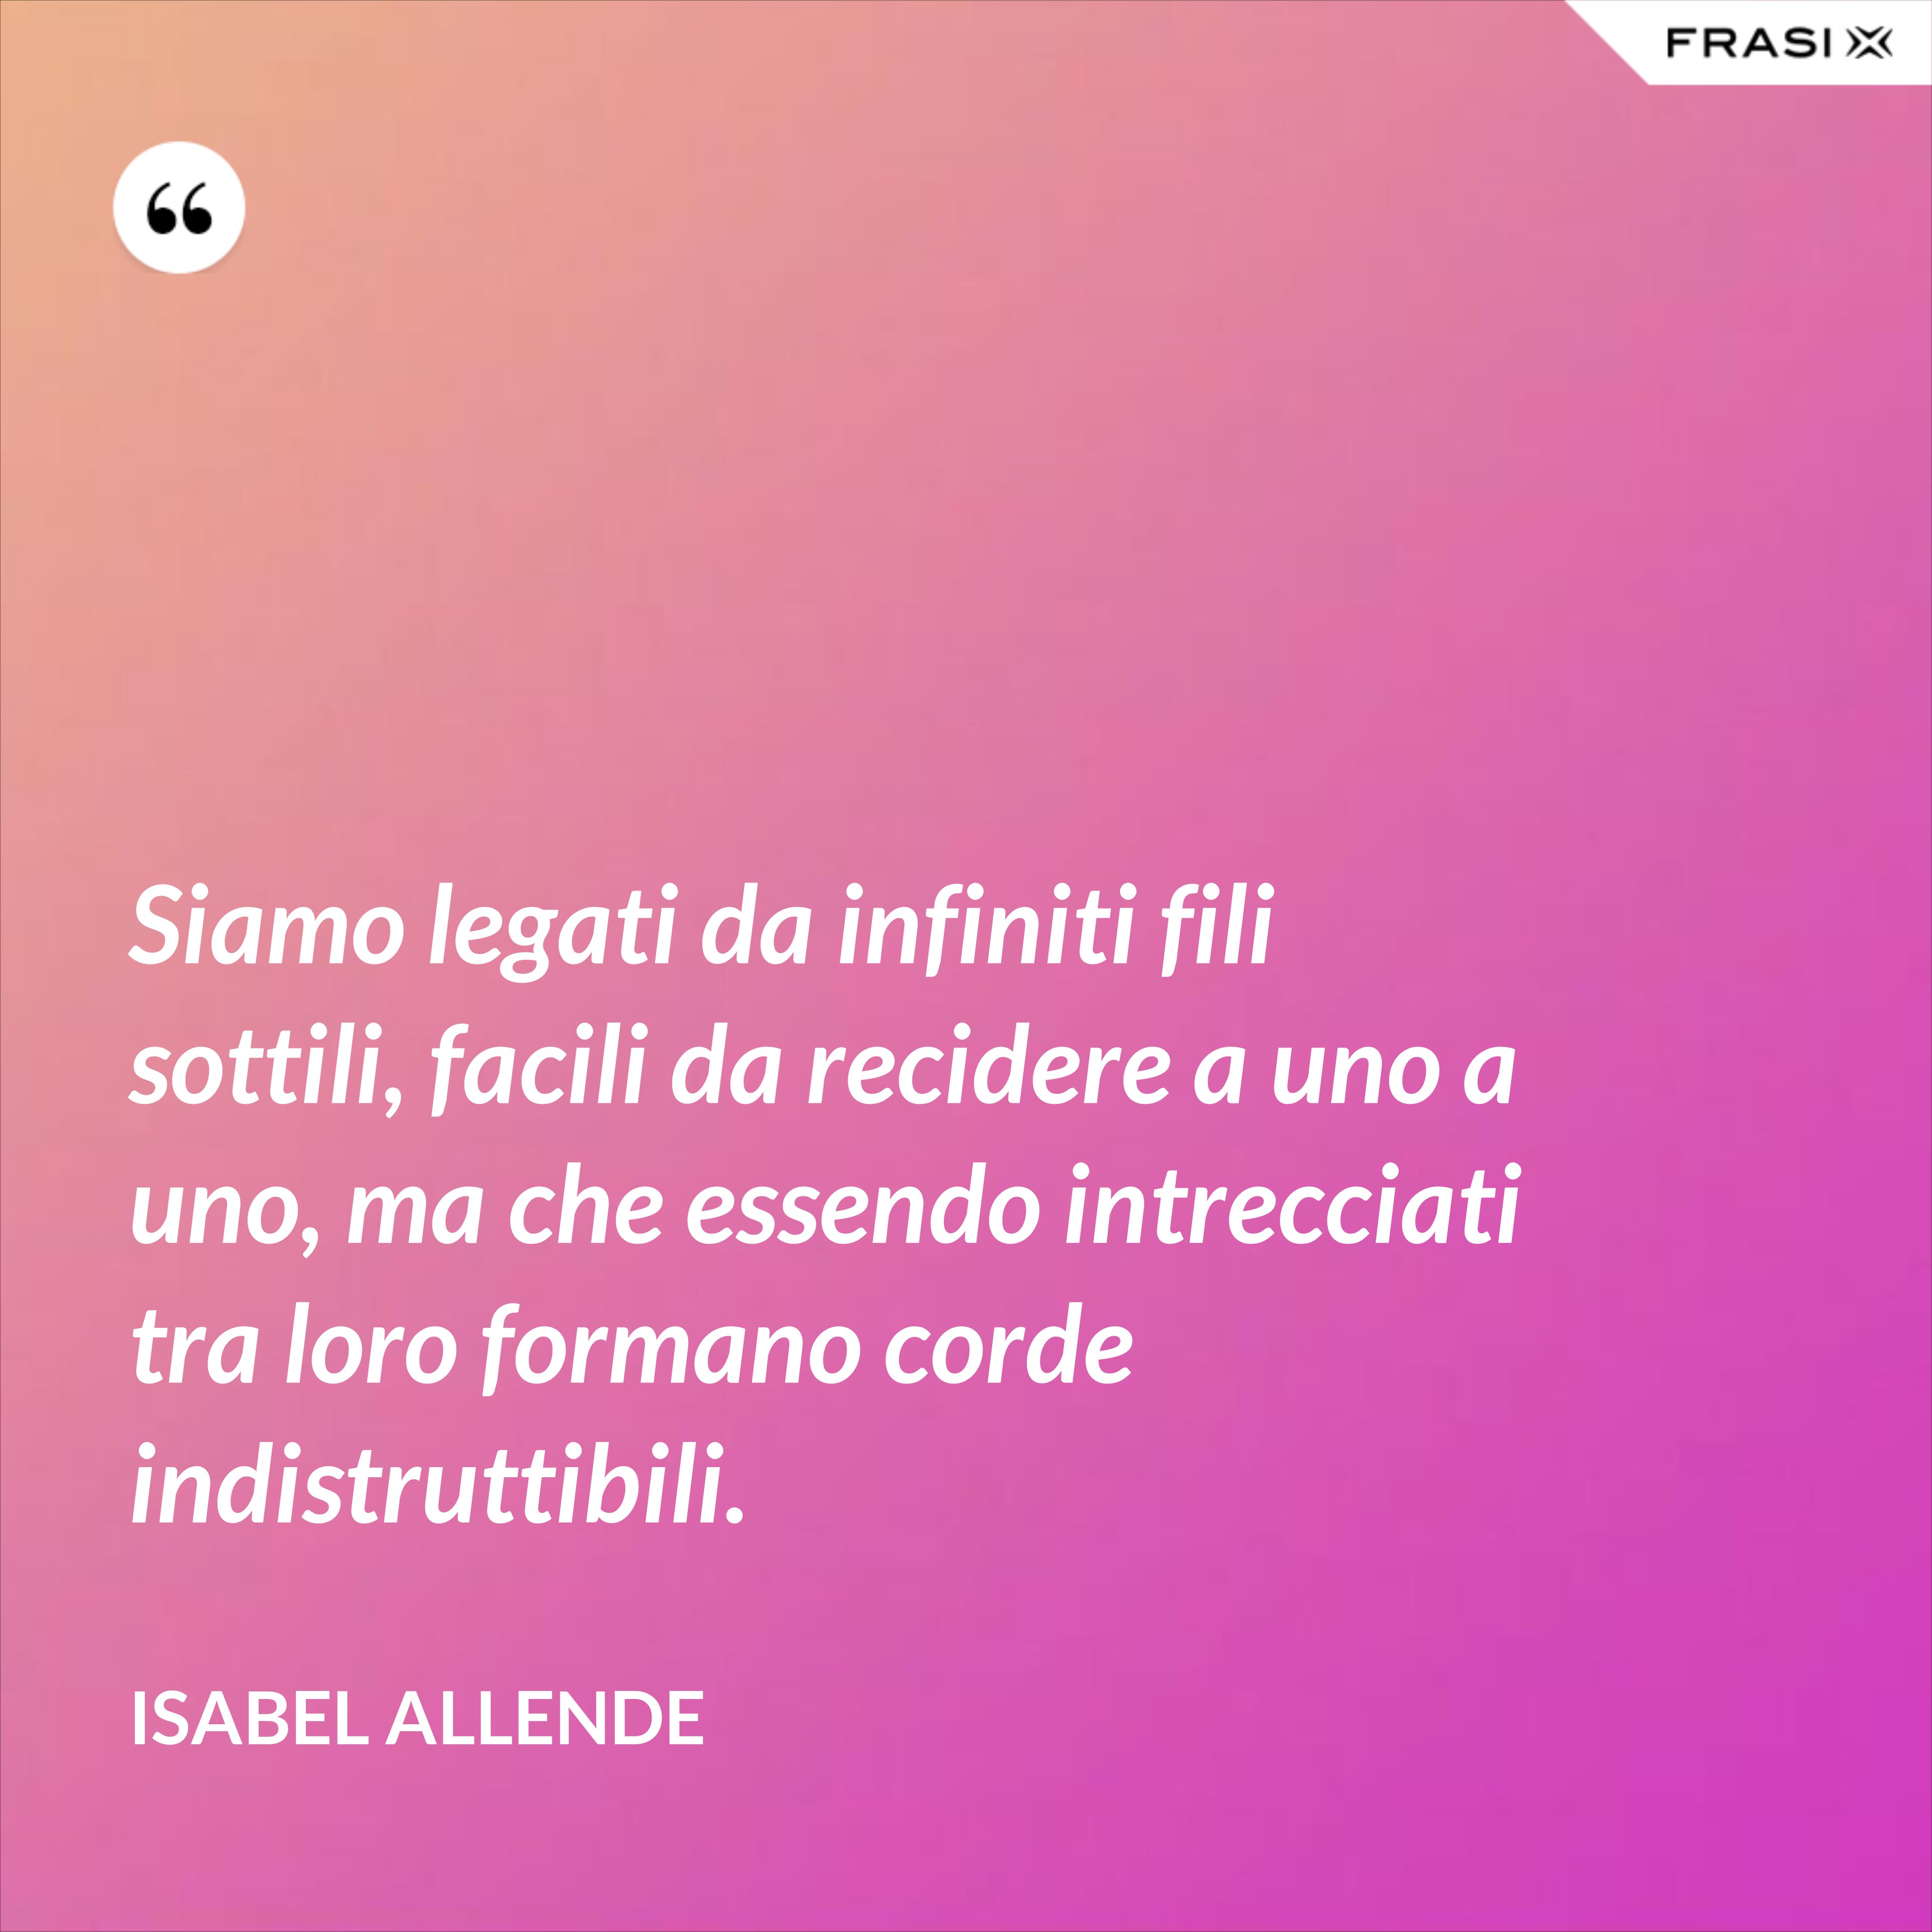 Siamo legati da infiniti fili sottili, facili da recidere a uno a uno, ma che essendo intrecciati tra loro formano corde indistruttibili. - Isabel Allende